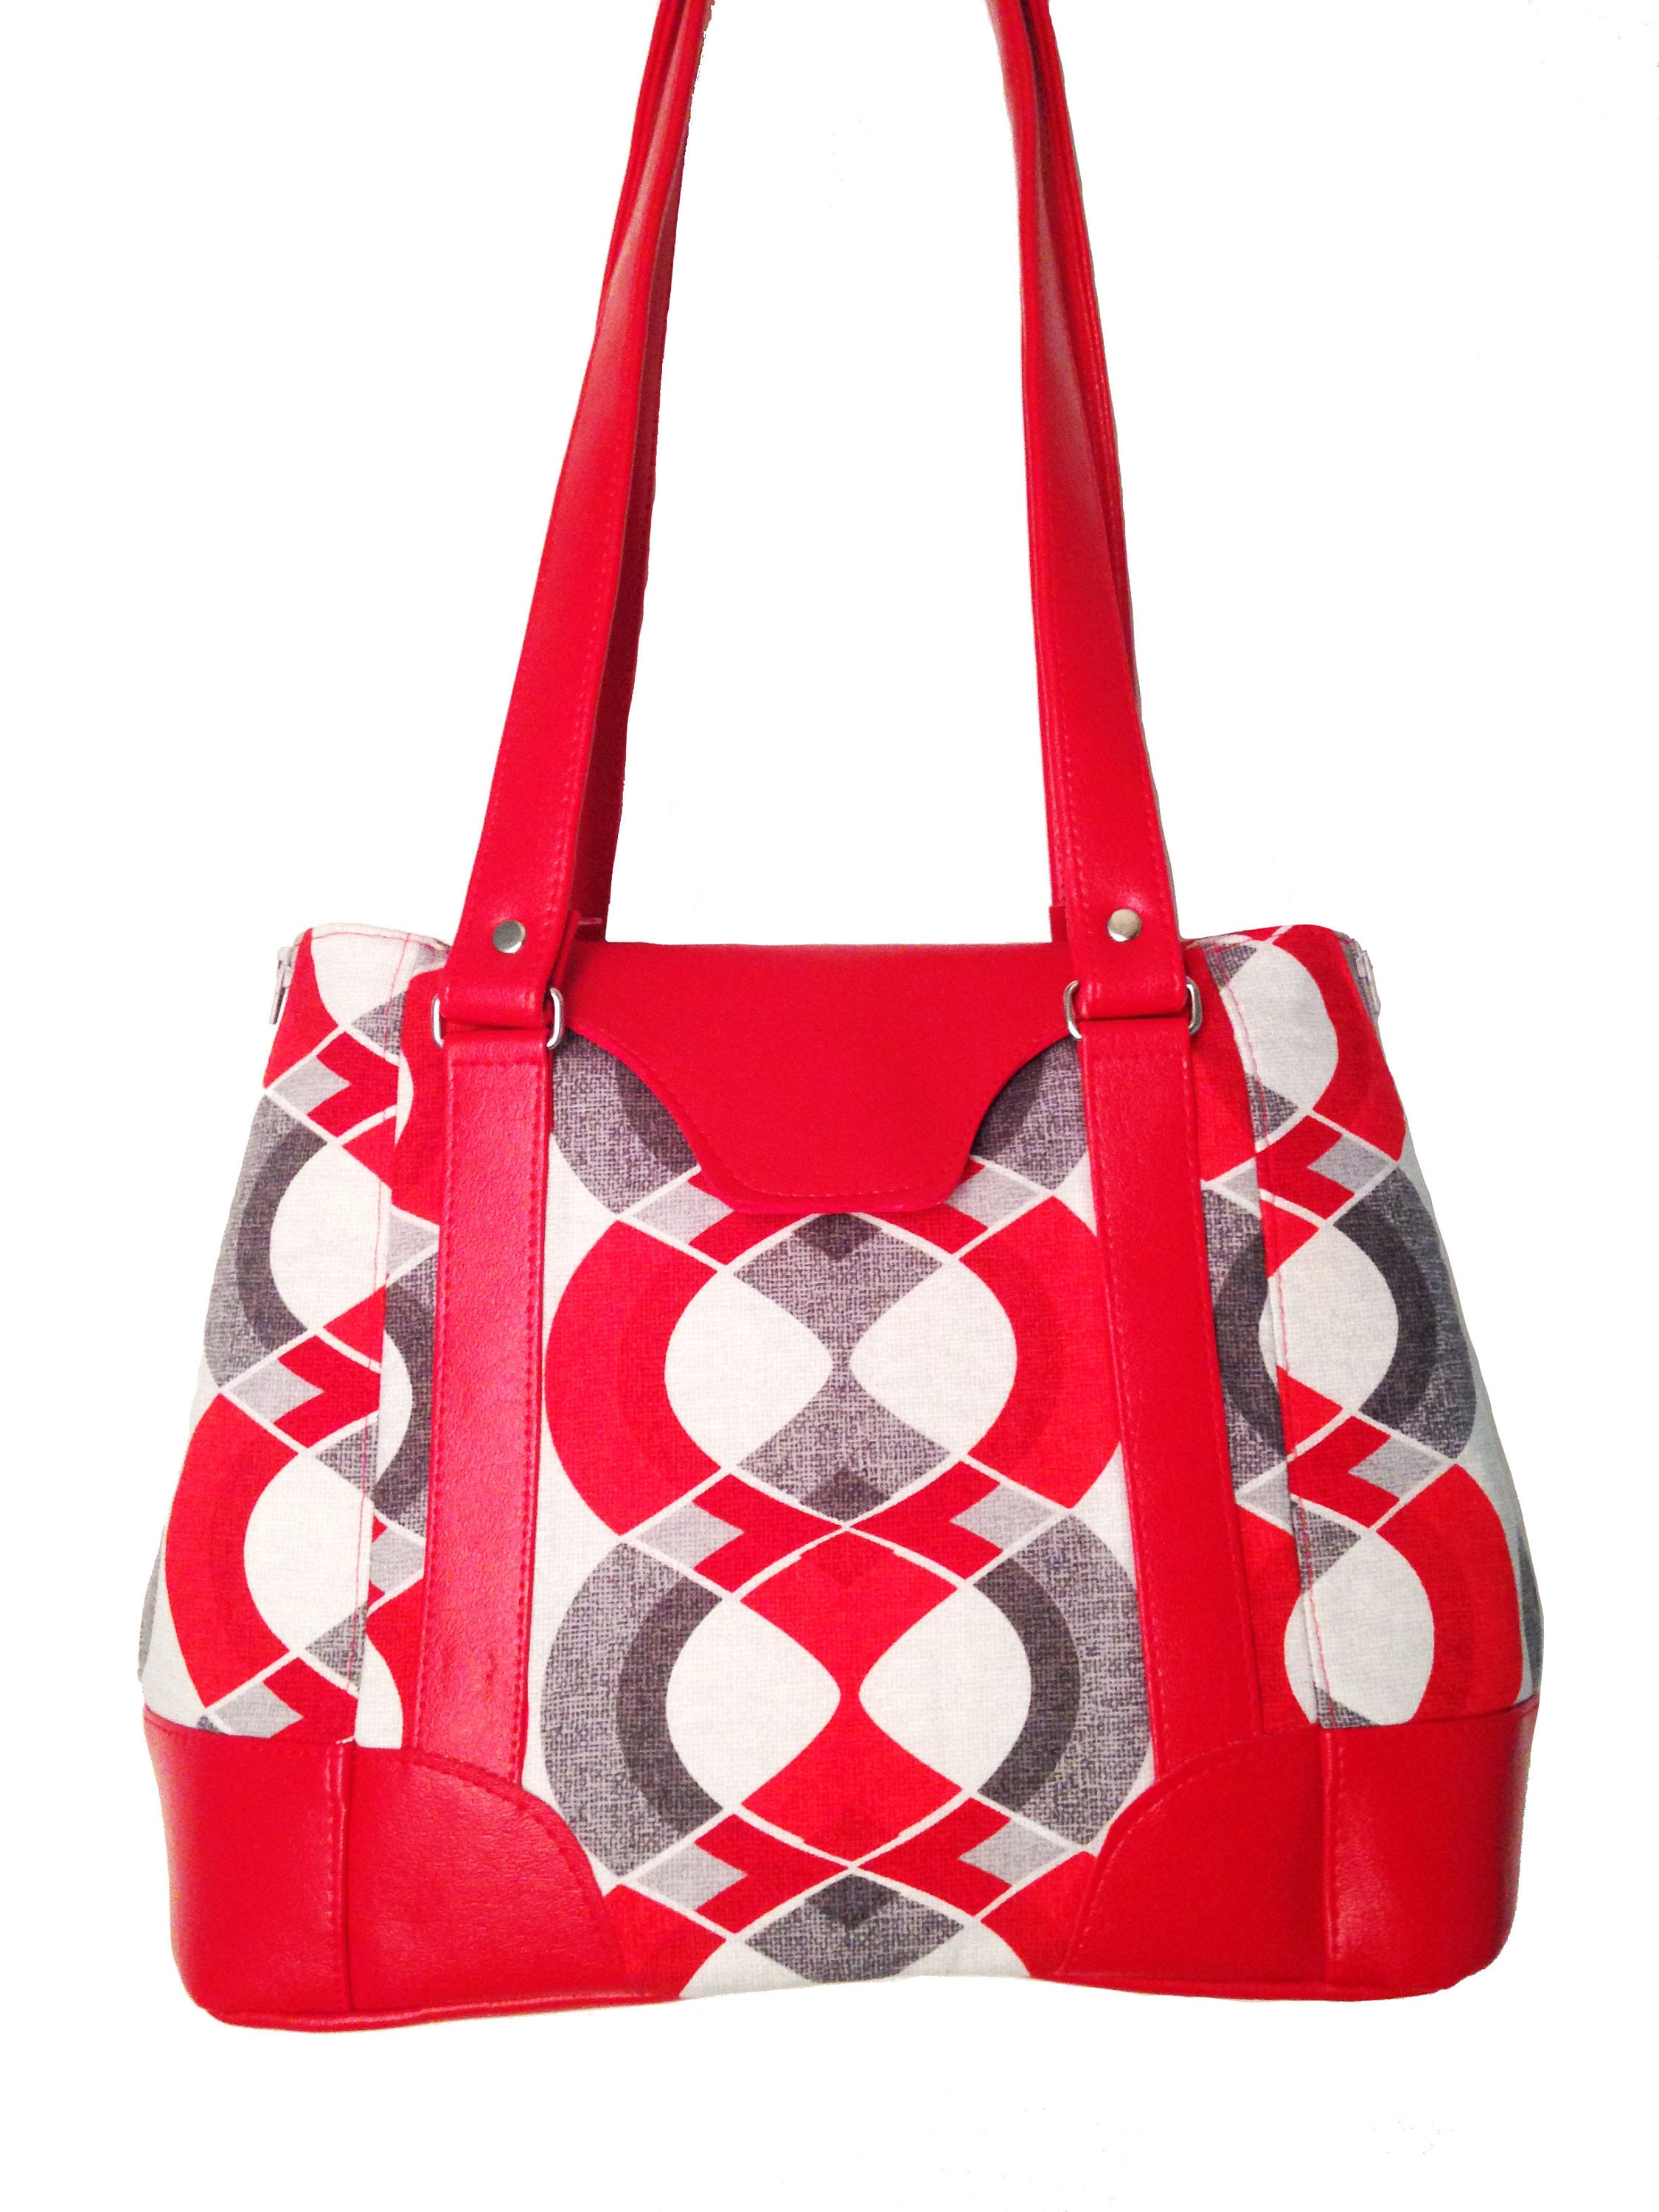 Buy MK MARKETING™ Side Sling Bag for girls Women Leather Handbag stylish  Latest Checks Design Purse for women Online at desertcartINDIA